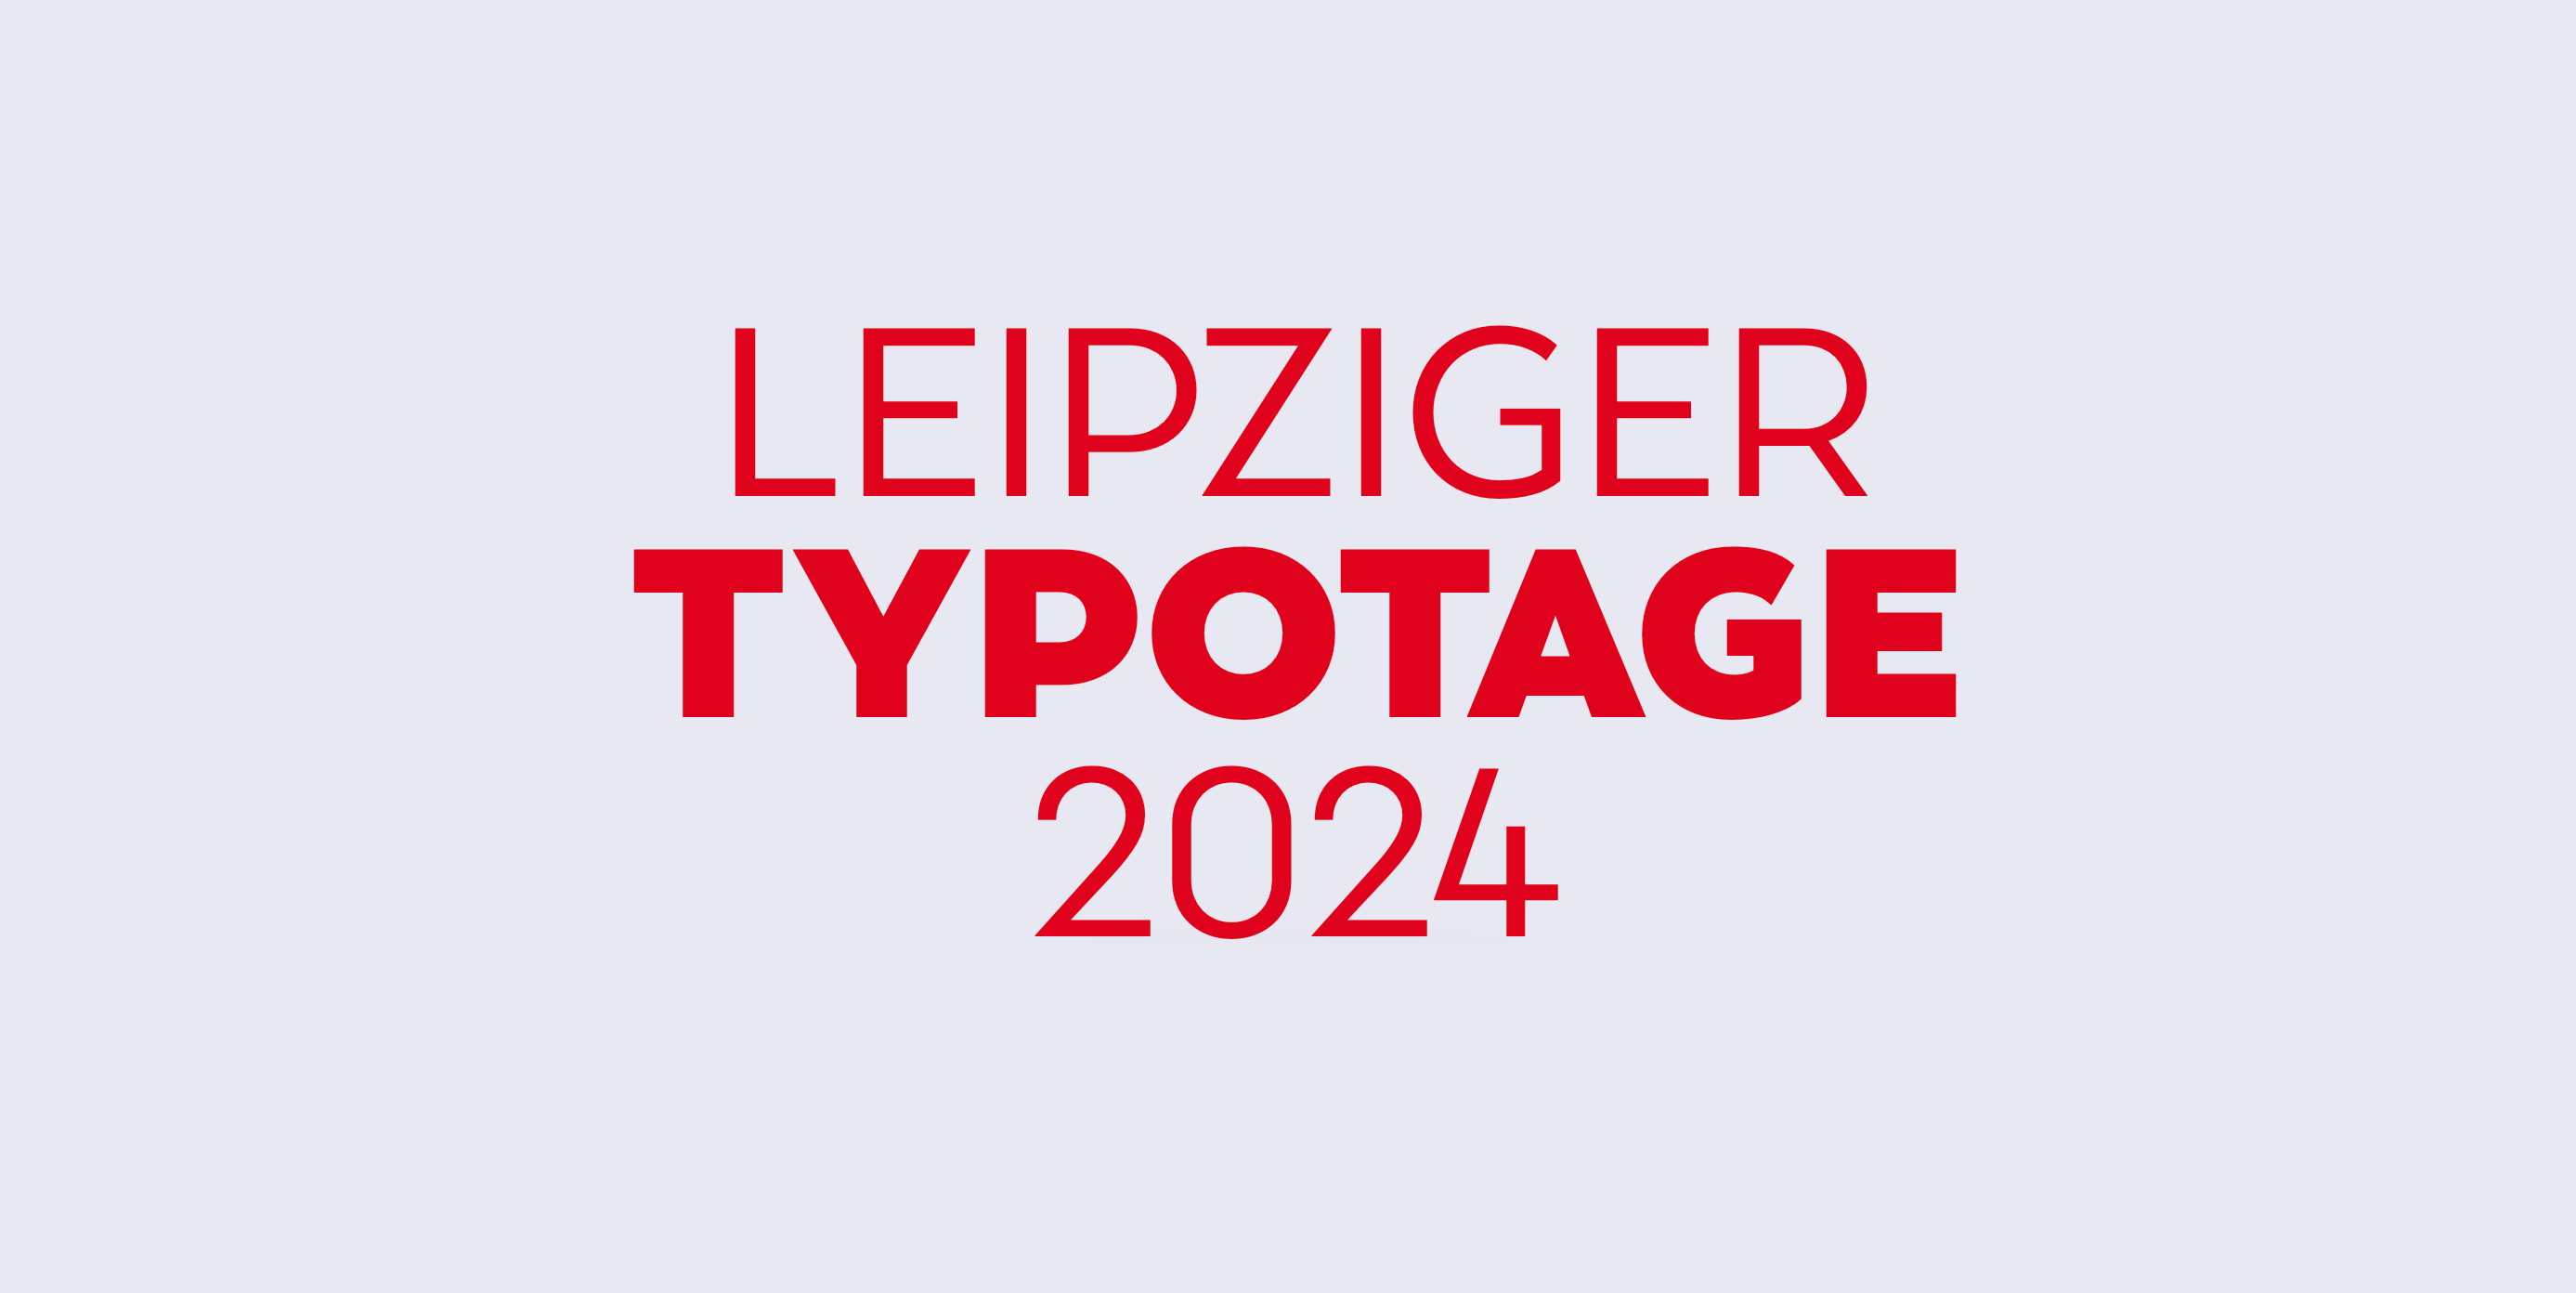 Typotage Leipzig 2024